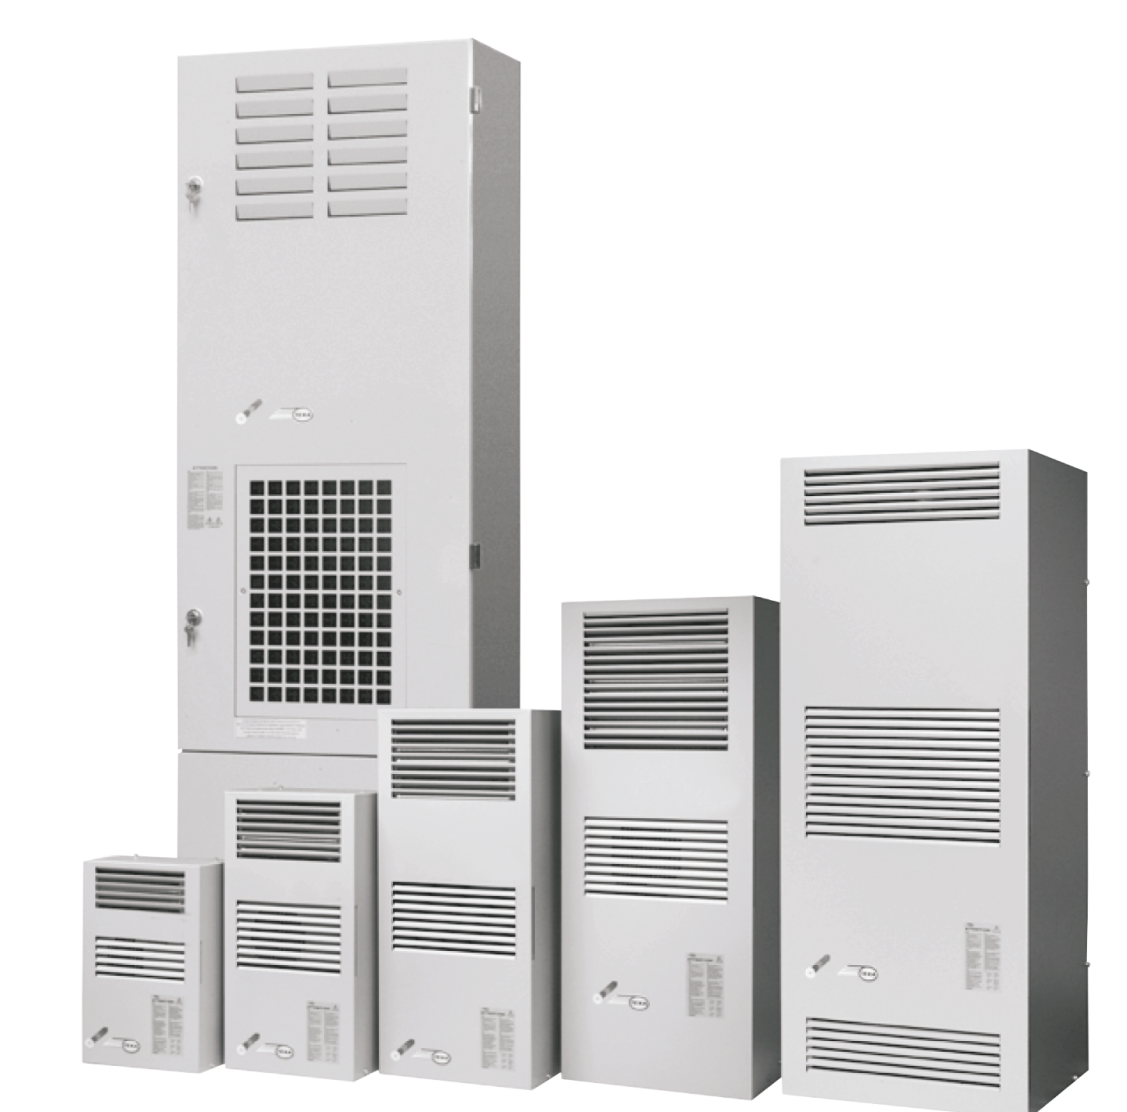 Air conditioner EGO04 (230V, 50-60Hz, 380W)